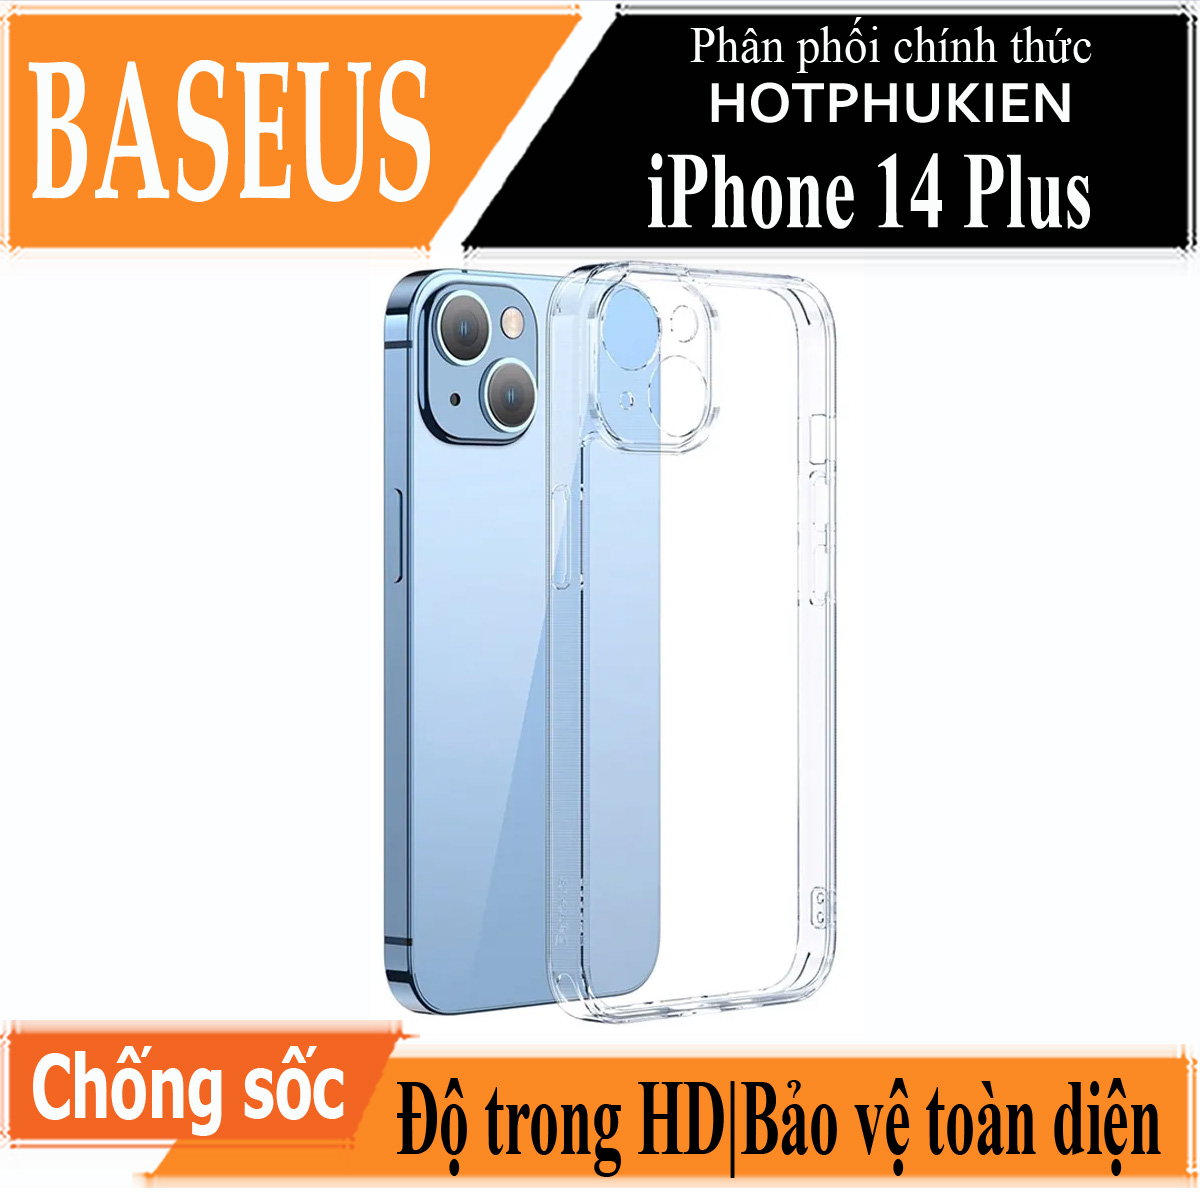 Ốp lưng chống sốc trong suốt cho iPhone 14 Plus (6.7 inch) hiệu Baseus Protective Case trang bị khung bảo vệ camera, chống chịu va đập cực tốt, độ trong suốt chuẩn HD - hàng nhập khẩu